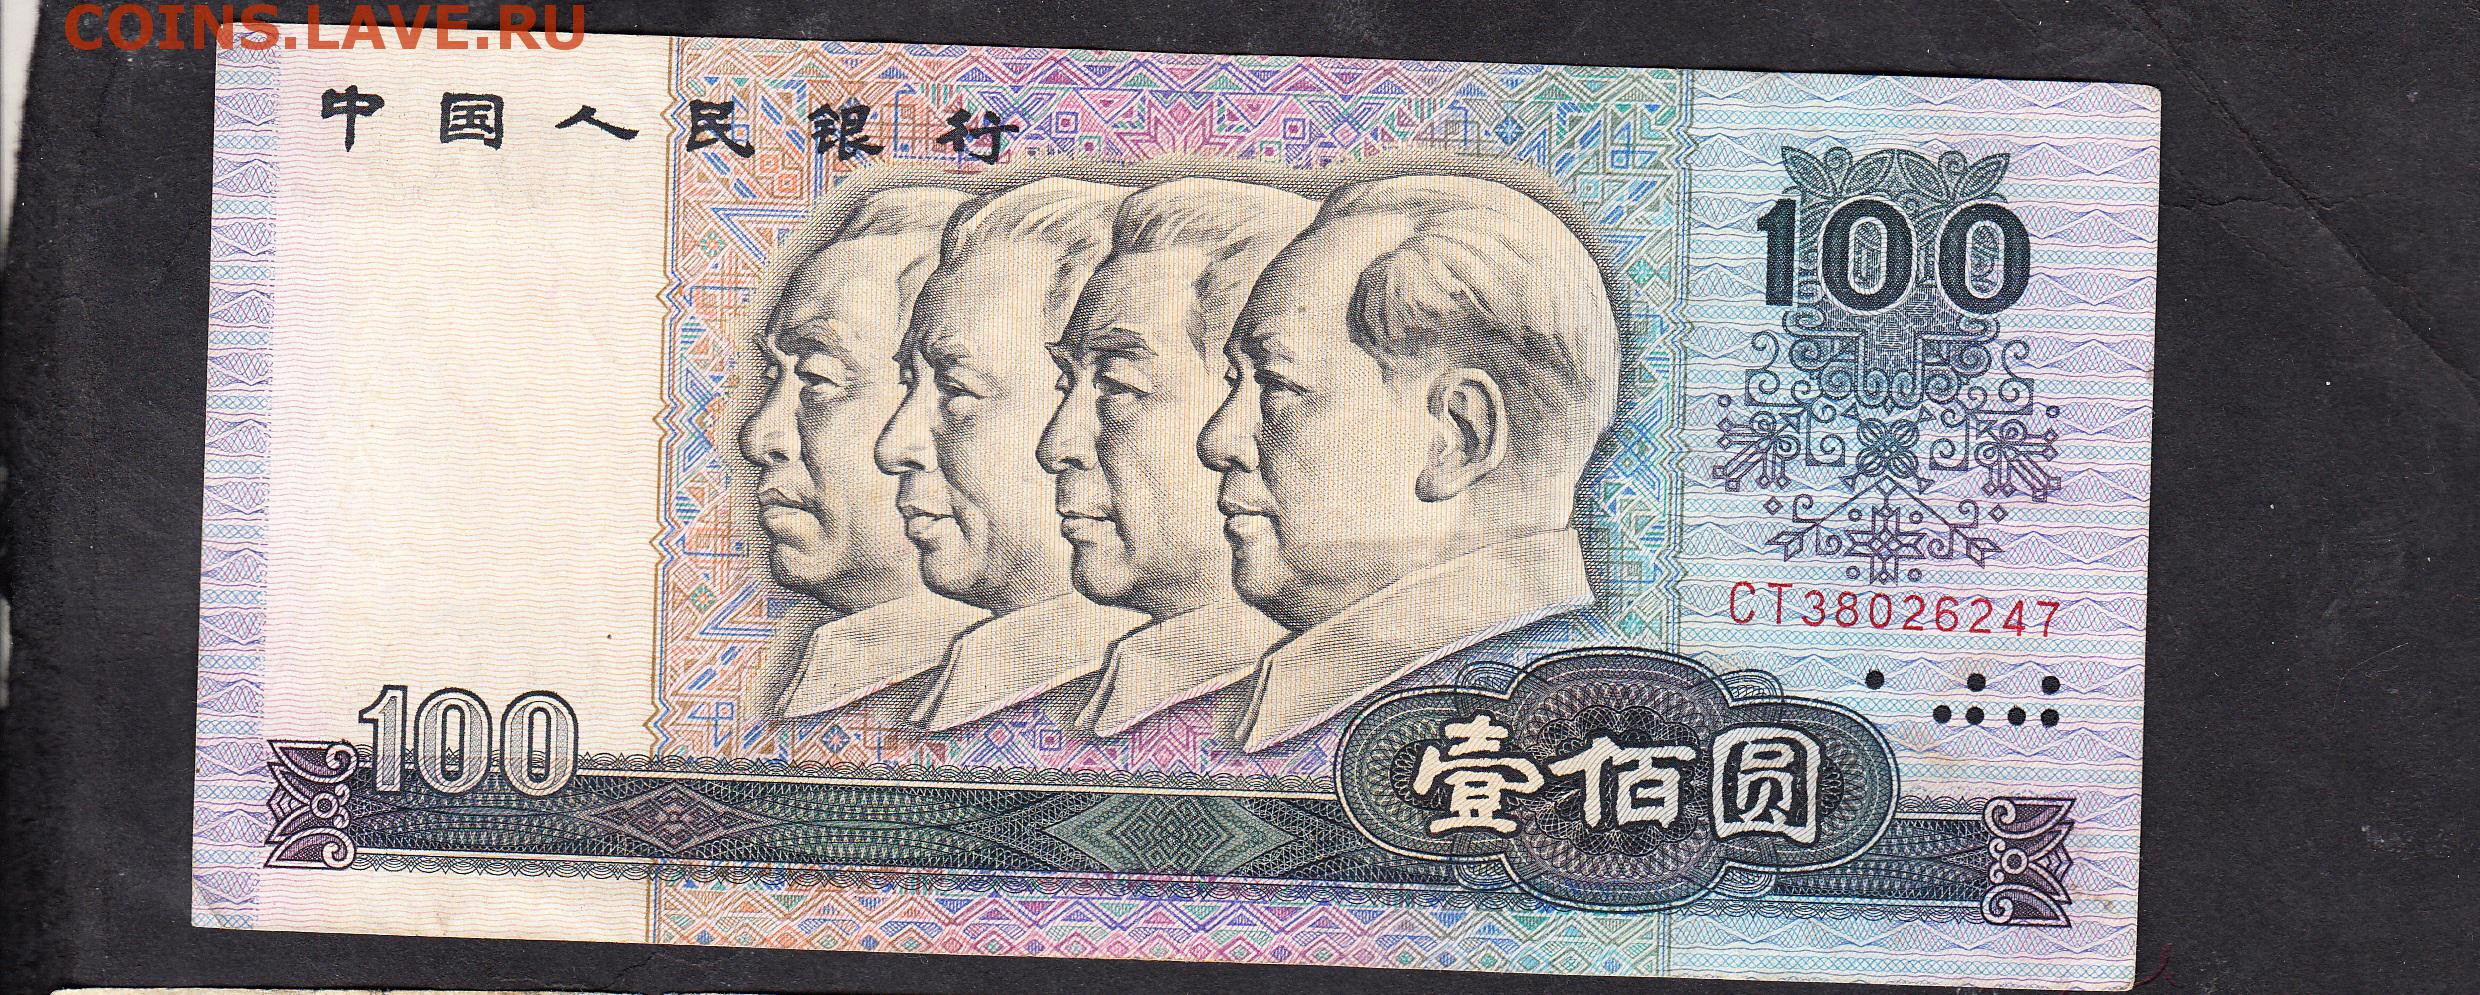 200 000 юаней. Китай 100 юаней. Китайская купюра 100 юаней. Юань банкноты 1980. Банкнот "100 юаней" КНР.